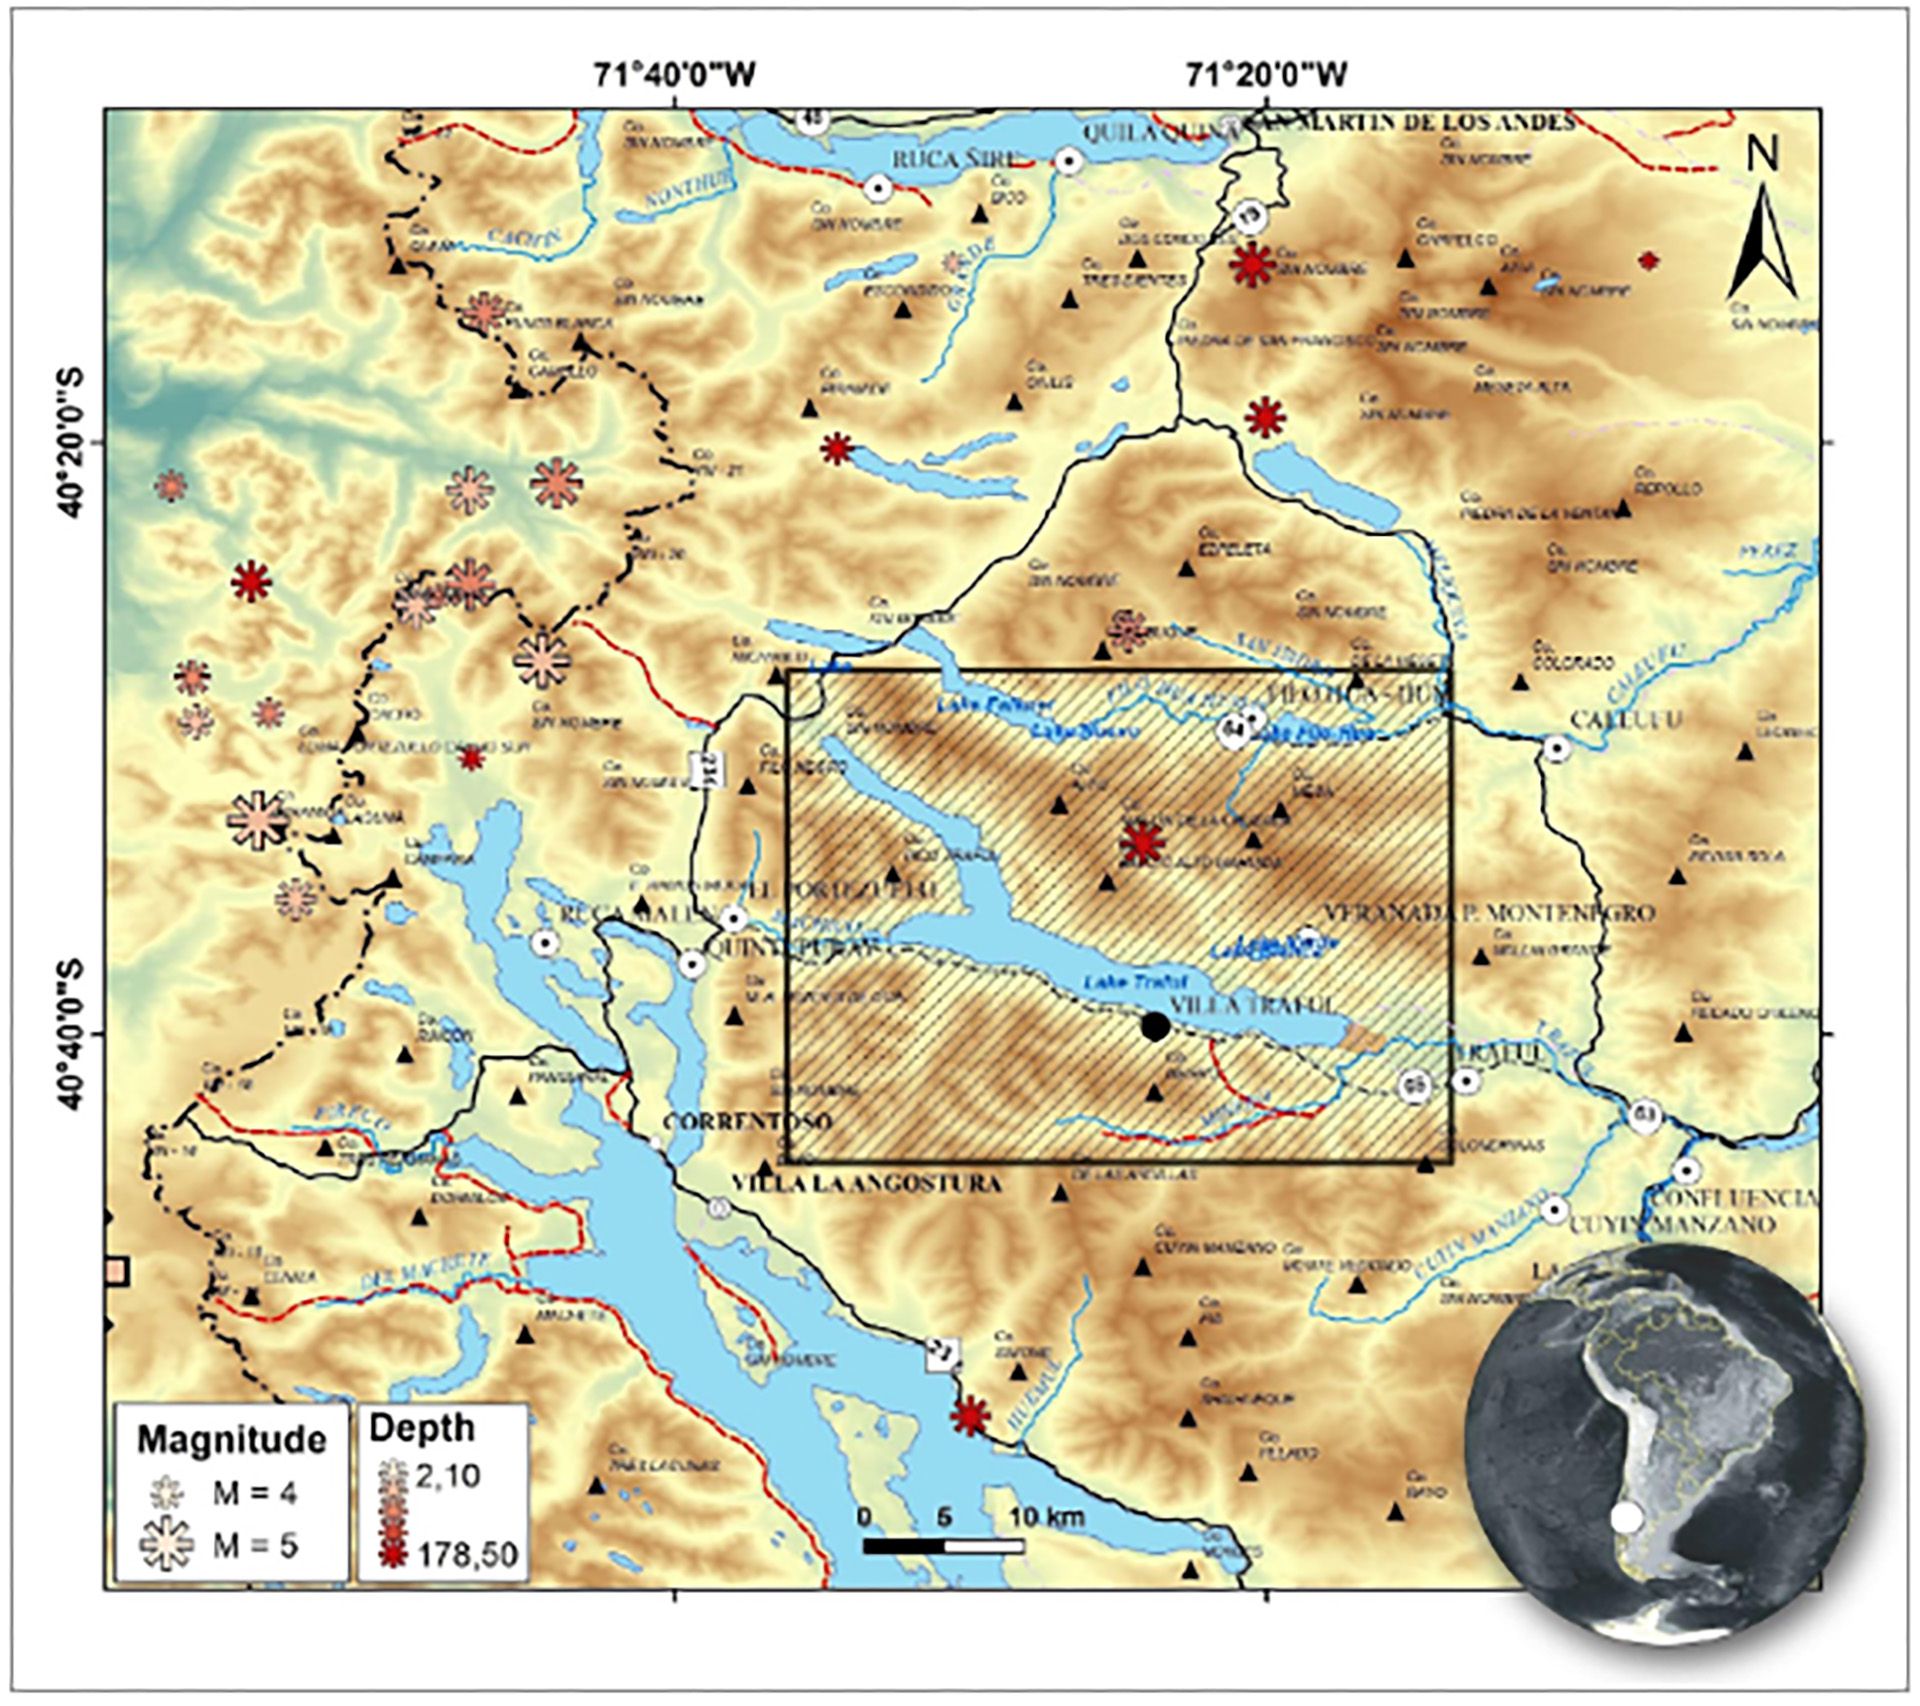 En el recuadro se encuentra la zona analizada en el estudio. Los asteriscos representan la profundidad y la magnitud de la actividad sísmica en cada punto.